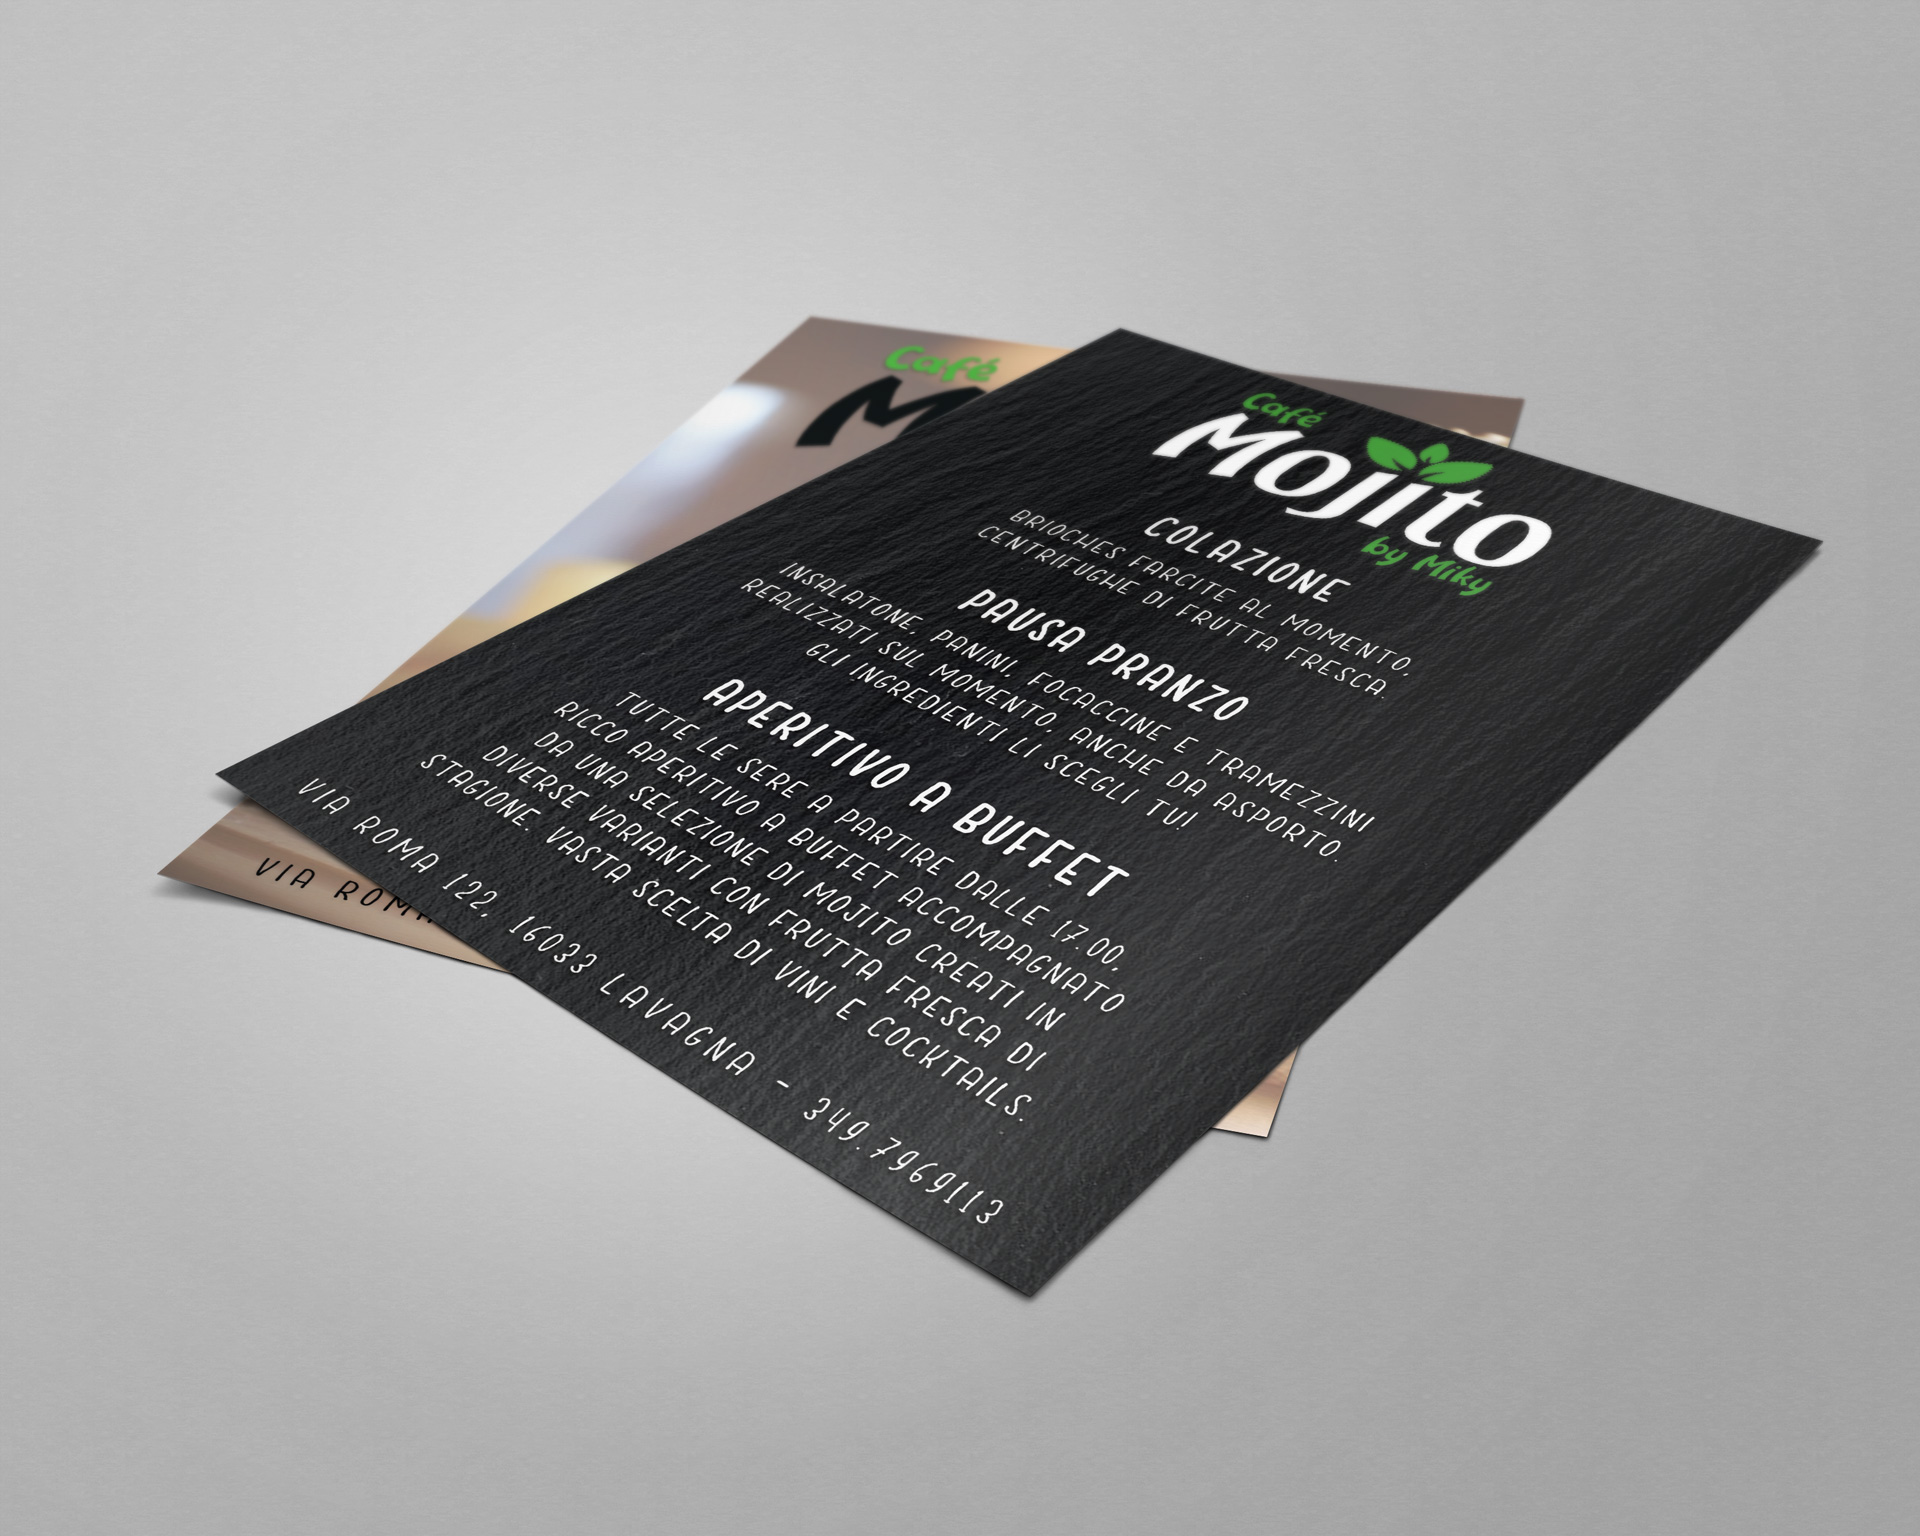 Bar mojito – Design grafica flyer promozionale